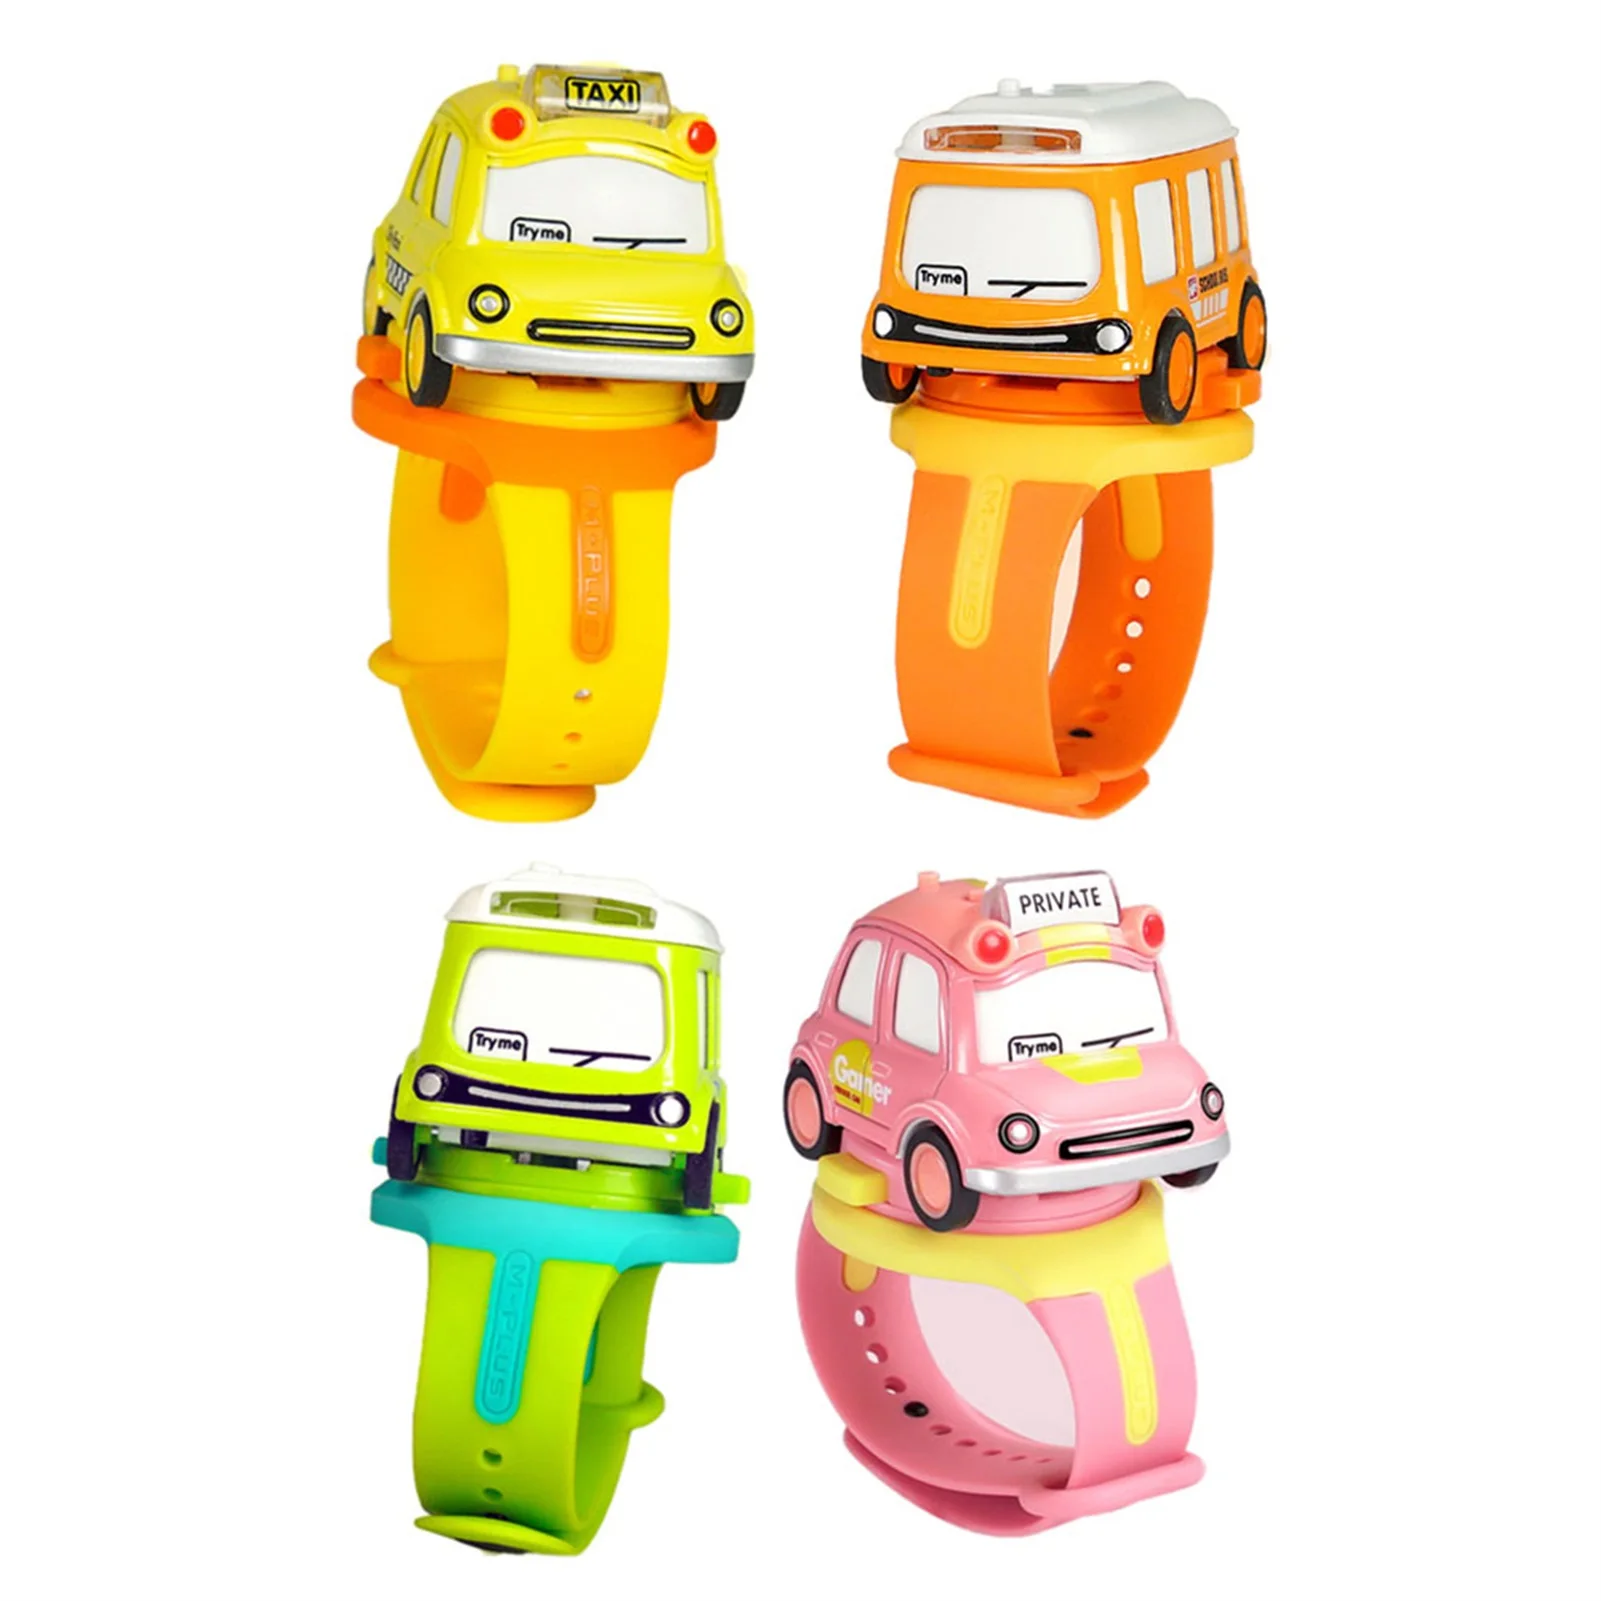 Автомобильные часы игрушка для детей Классические детские часы игрушки мини автомобиль часы с силиконовым ремешком Мультяшные Часы Автомо...